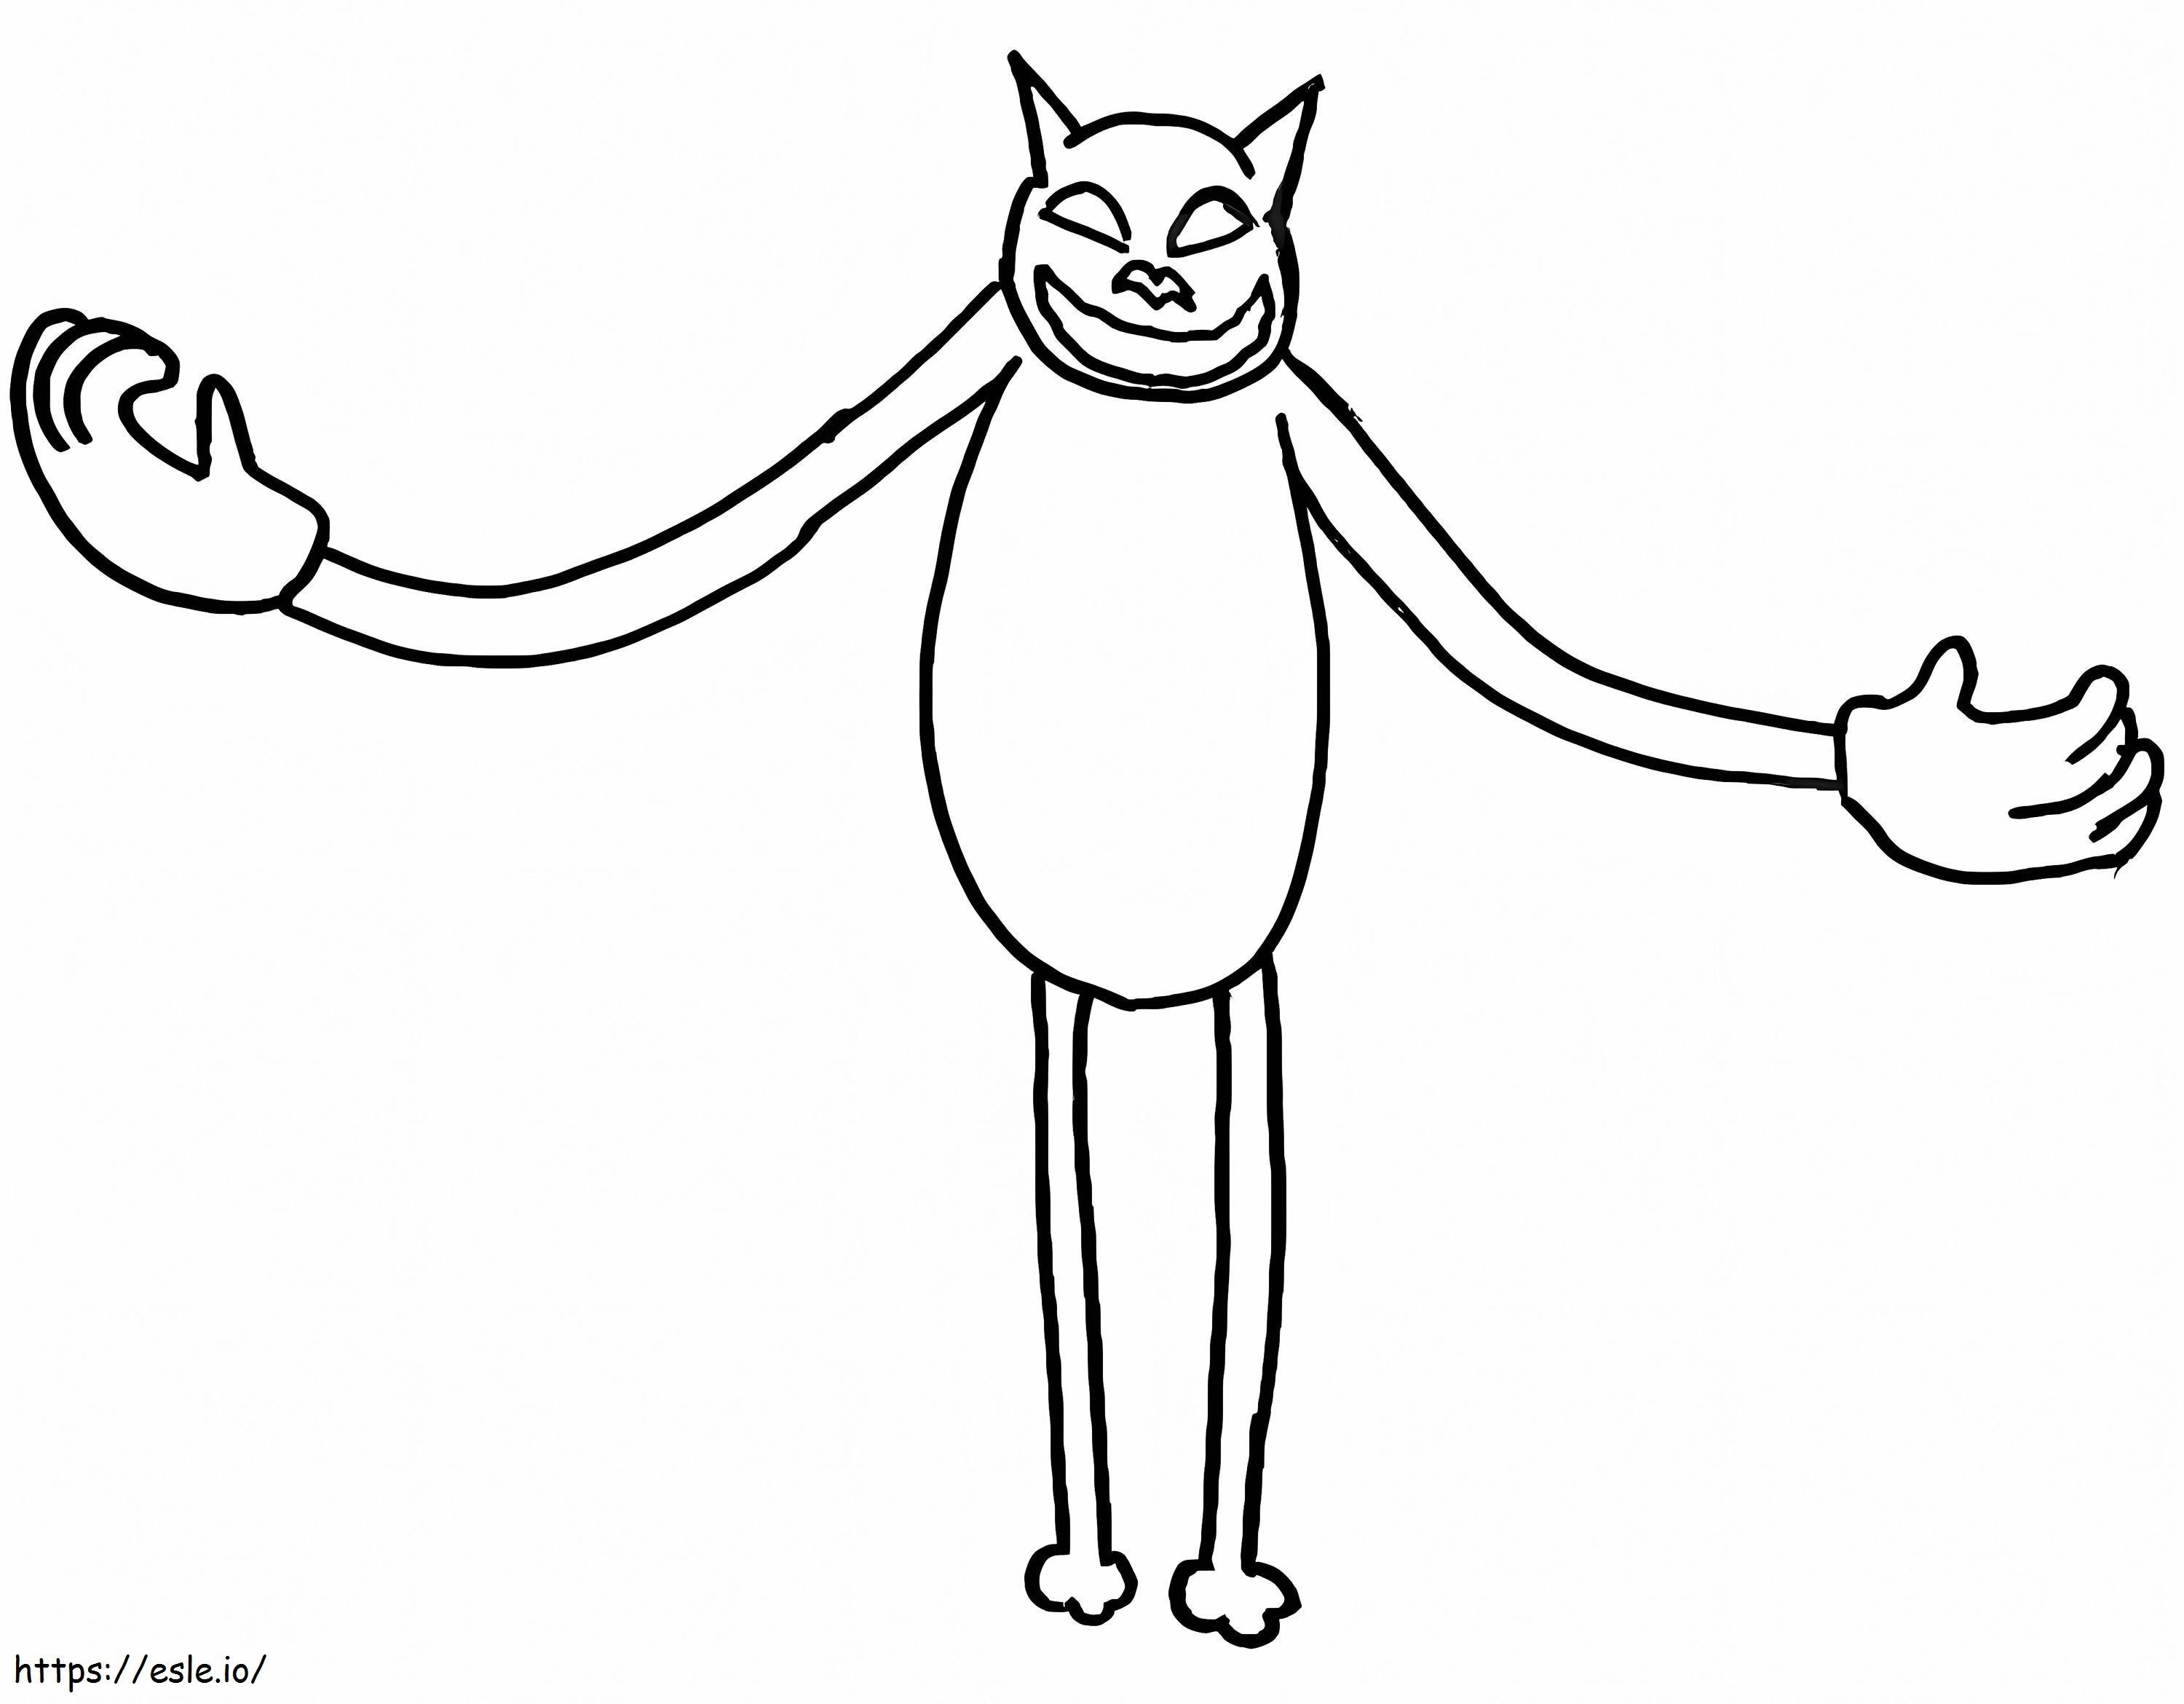 Gato gigante de dibujos animados para colorear